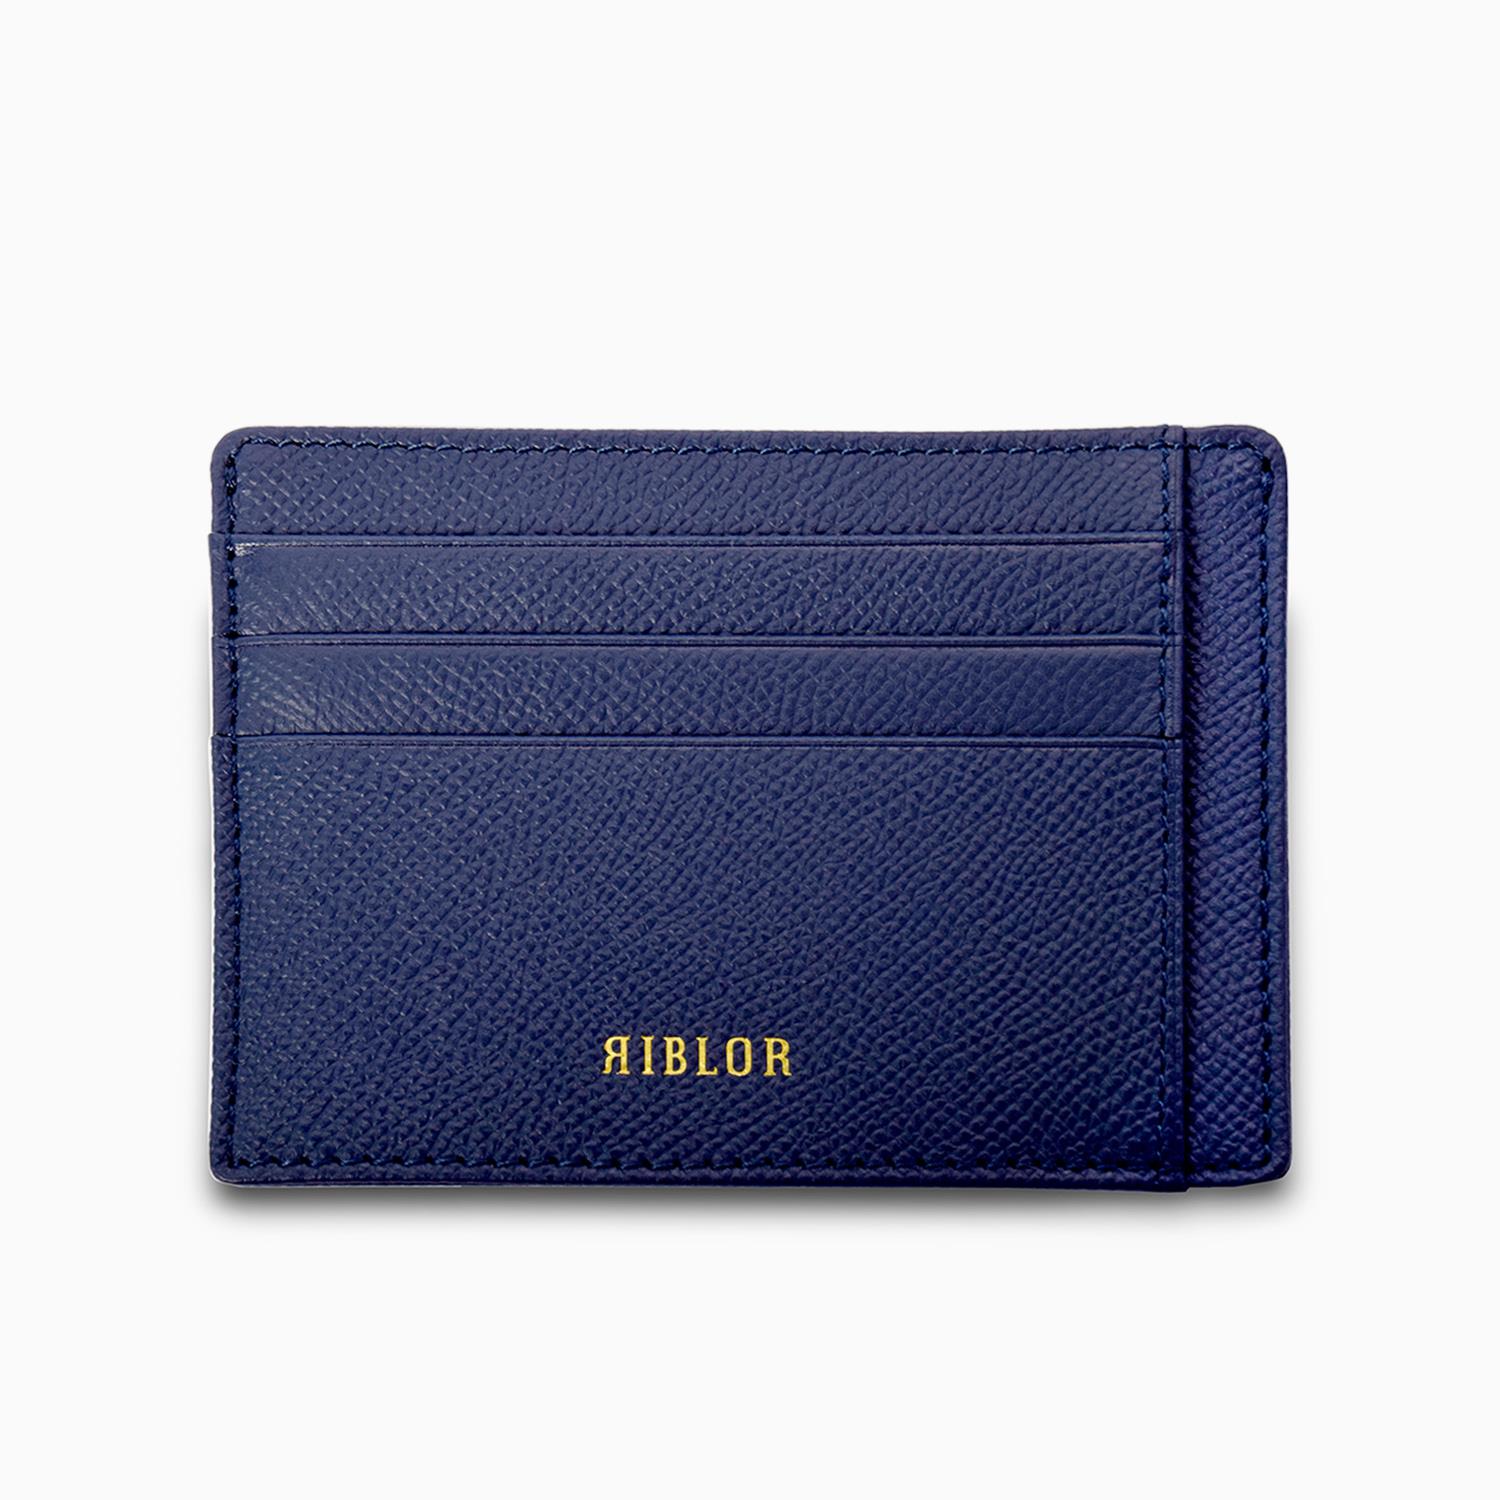 Salvio 6 Card Italian Leather Card Holder Navy Blue 